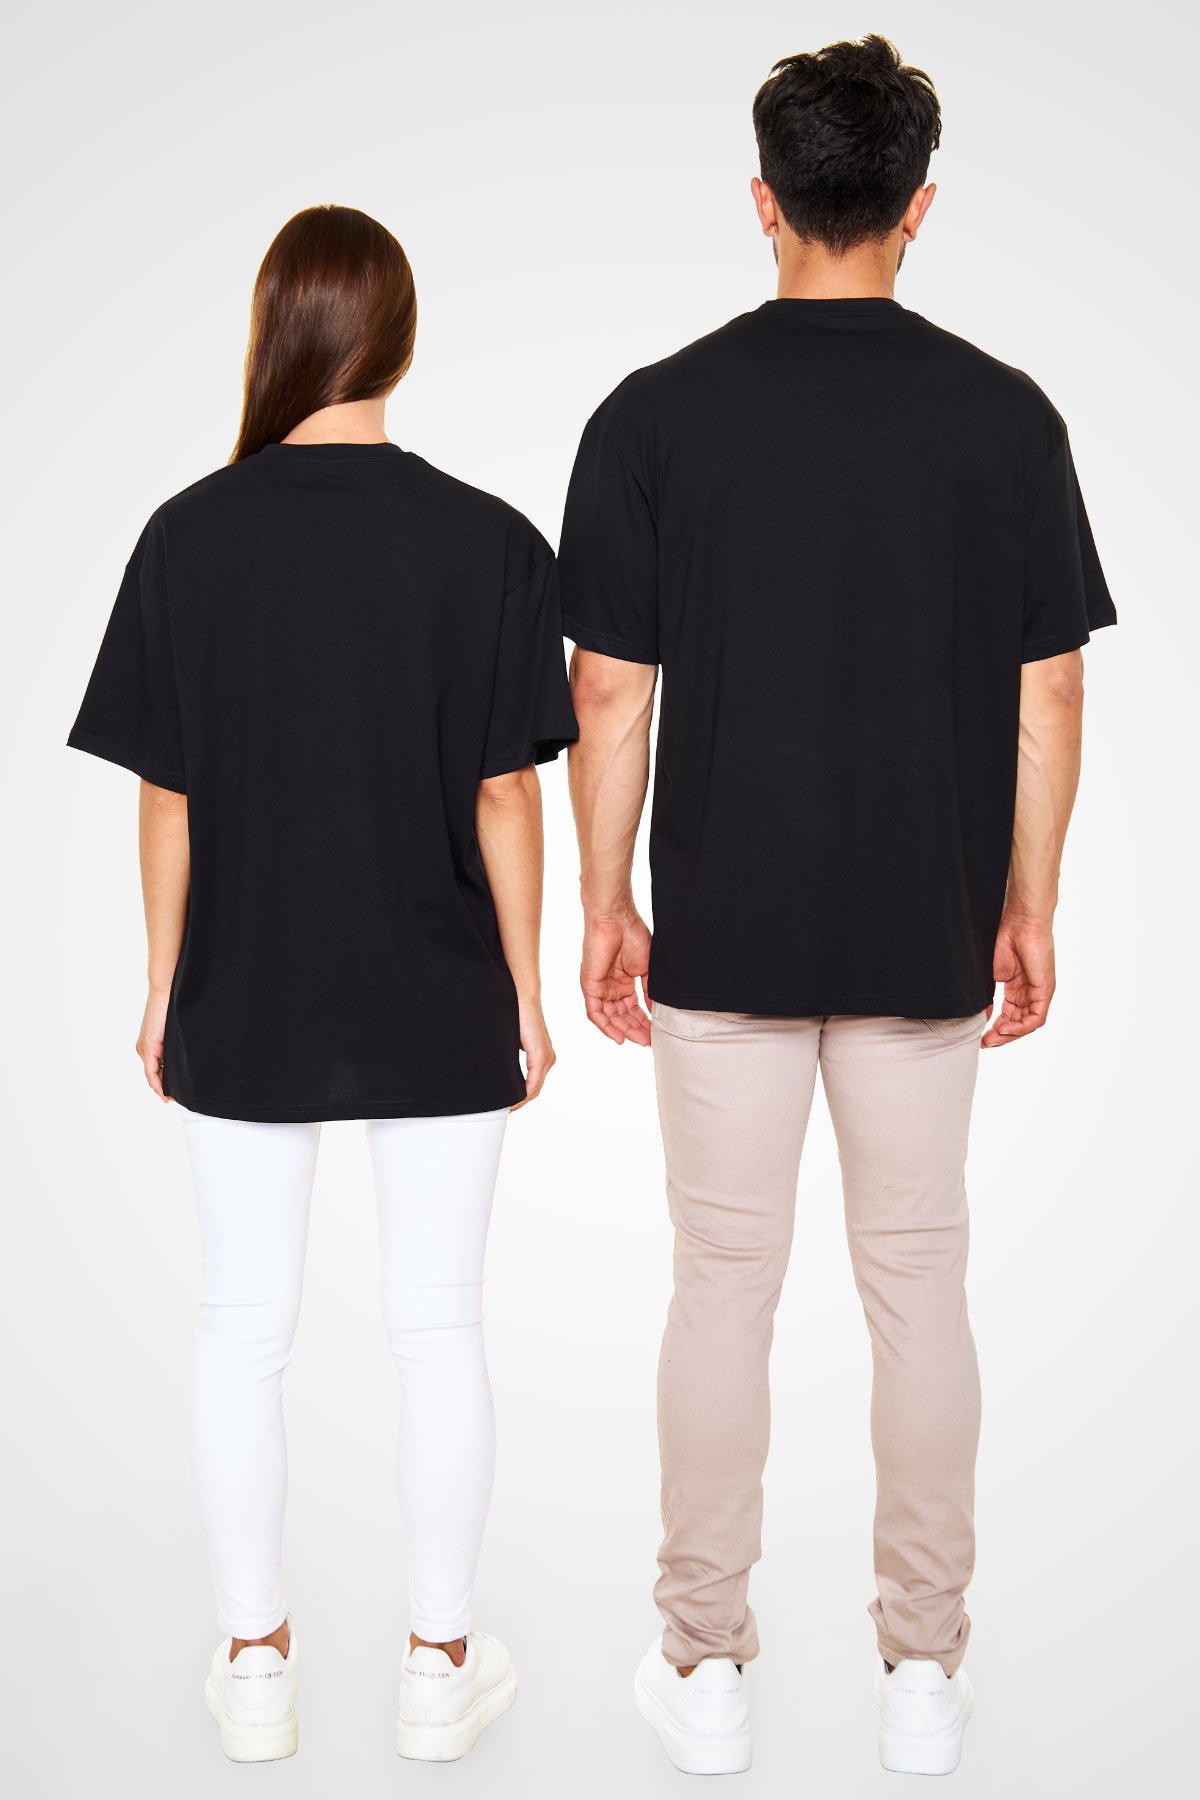 Lifelover Baskılı Unisex Siyah Oversize Tişört - Tshirt